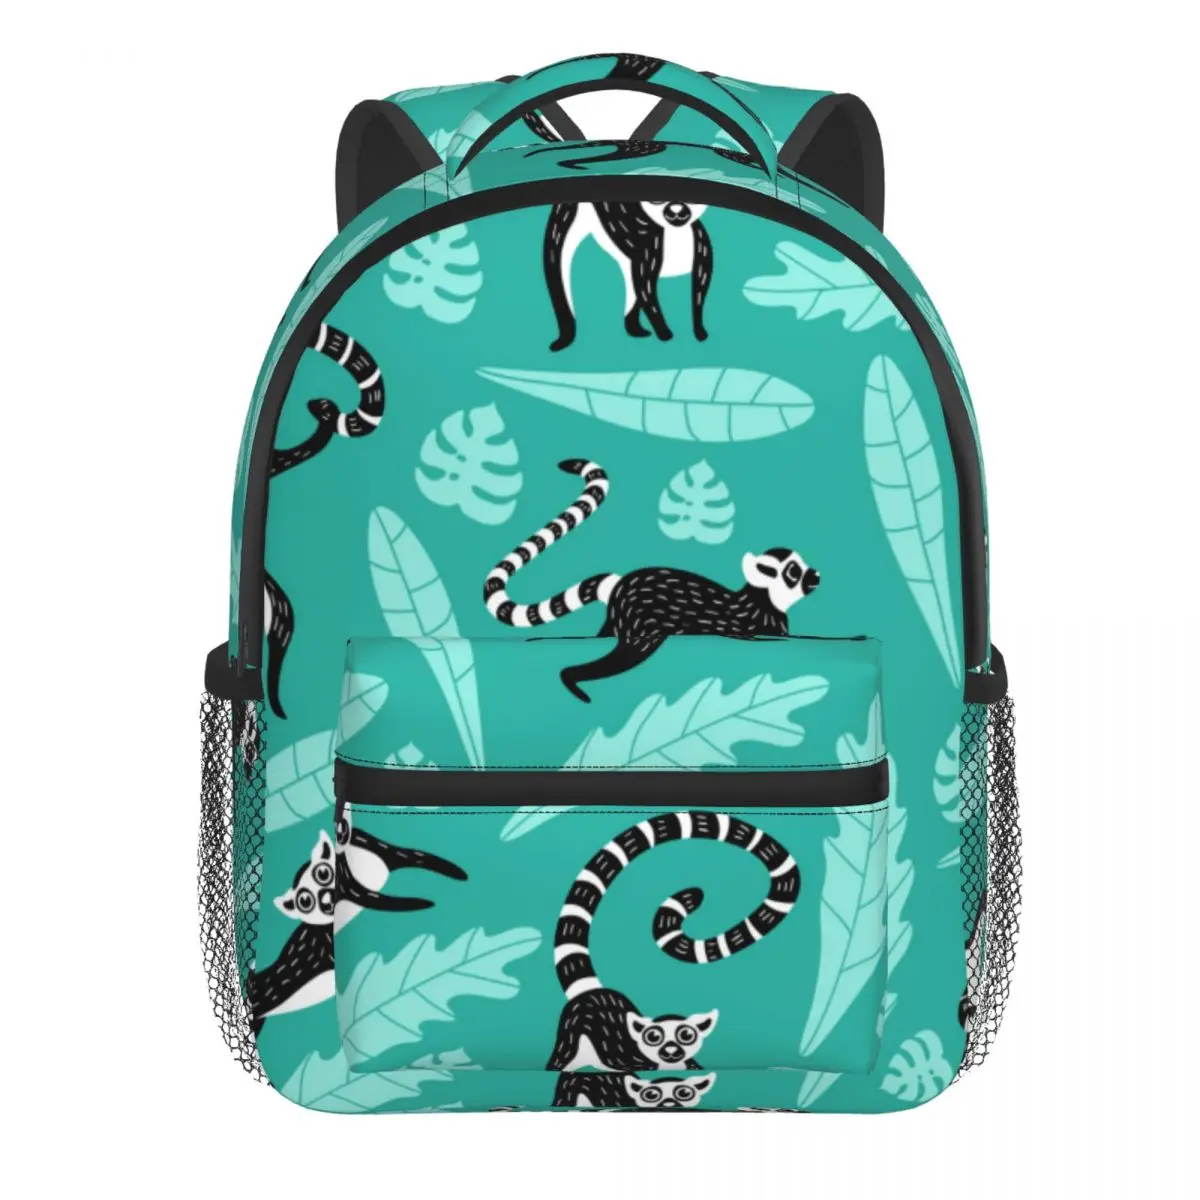 Cute Lemurs And Leaves Baby Backpack Kindergarten Schoolbag Kids Children School Bag